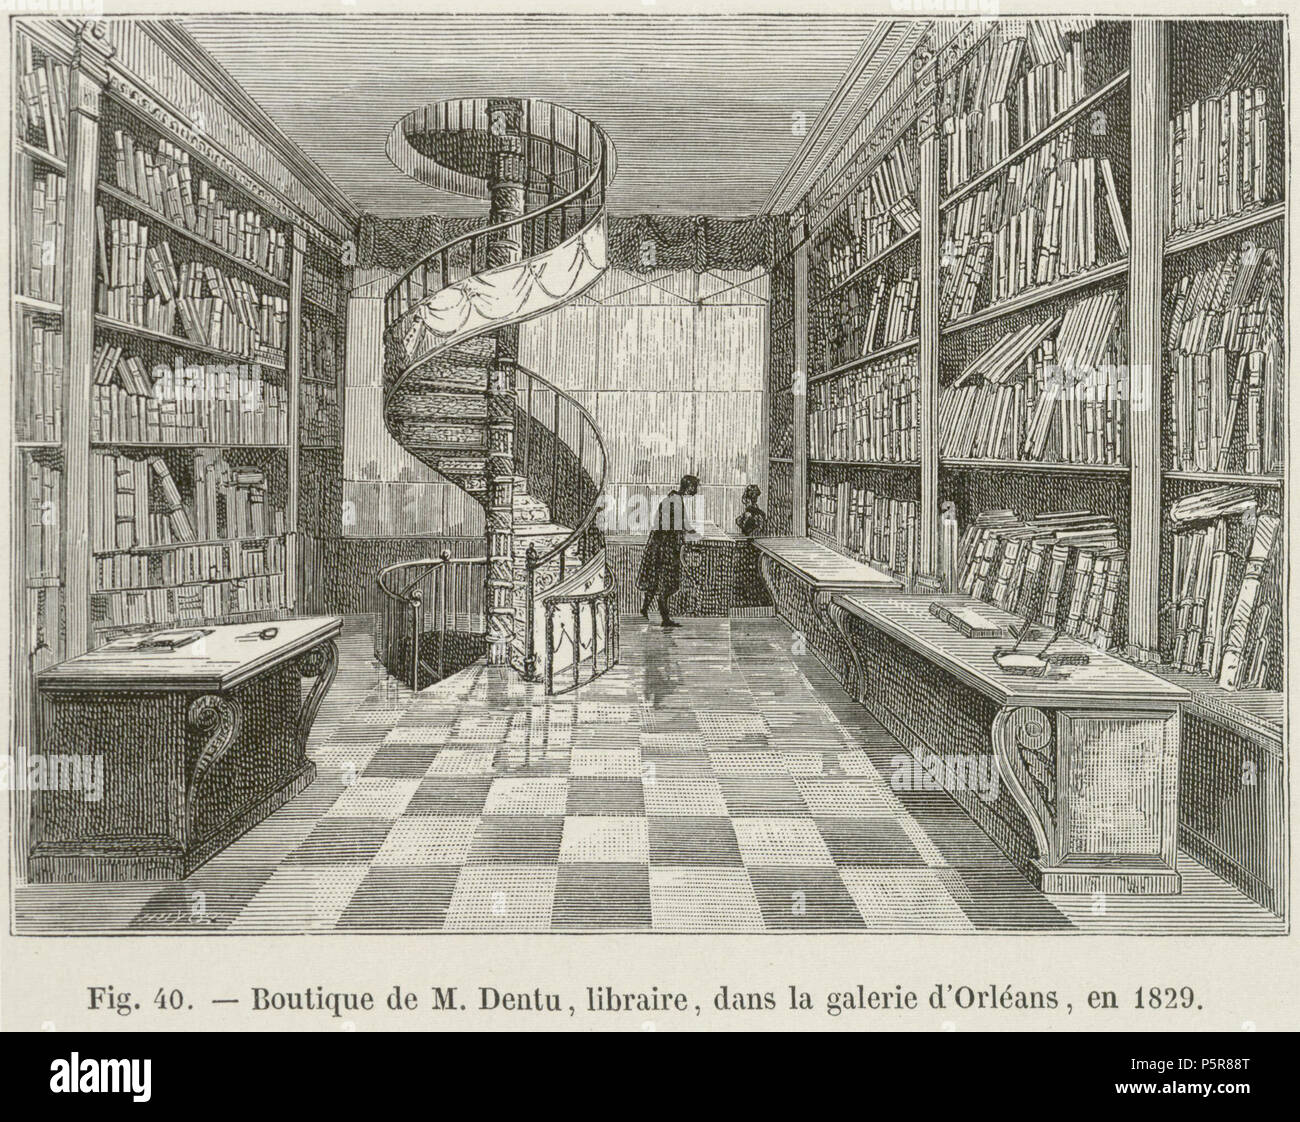 227 Boutique de M. Dentu, libraire, dans la galerie d'Orléans, en 1829 Stock Photo